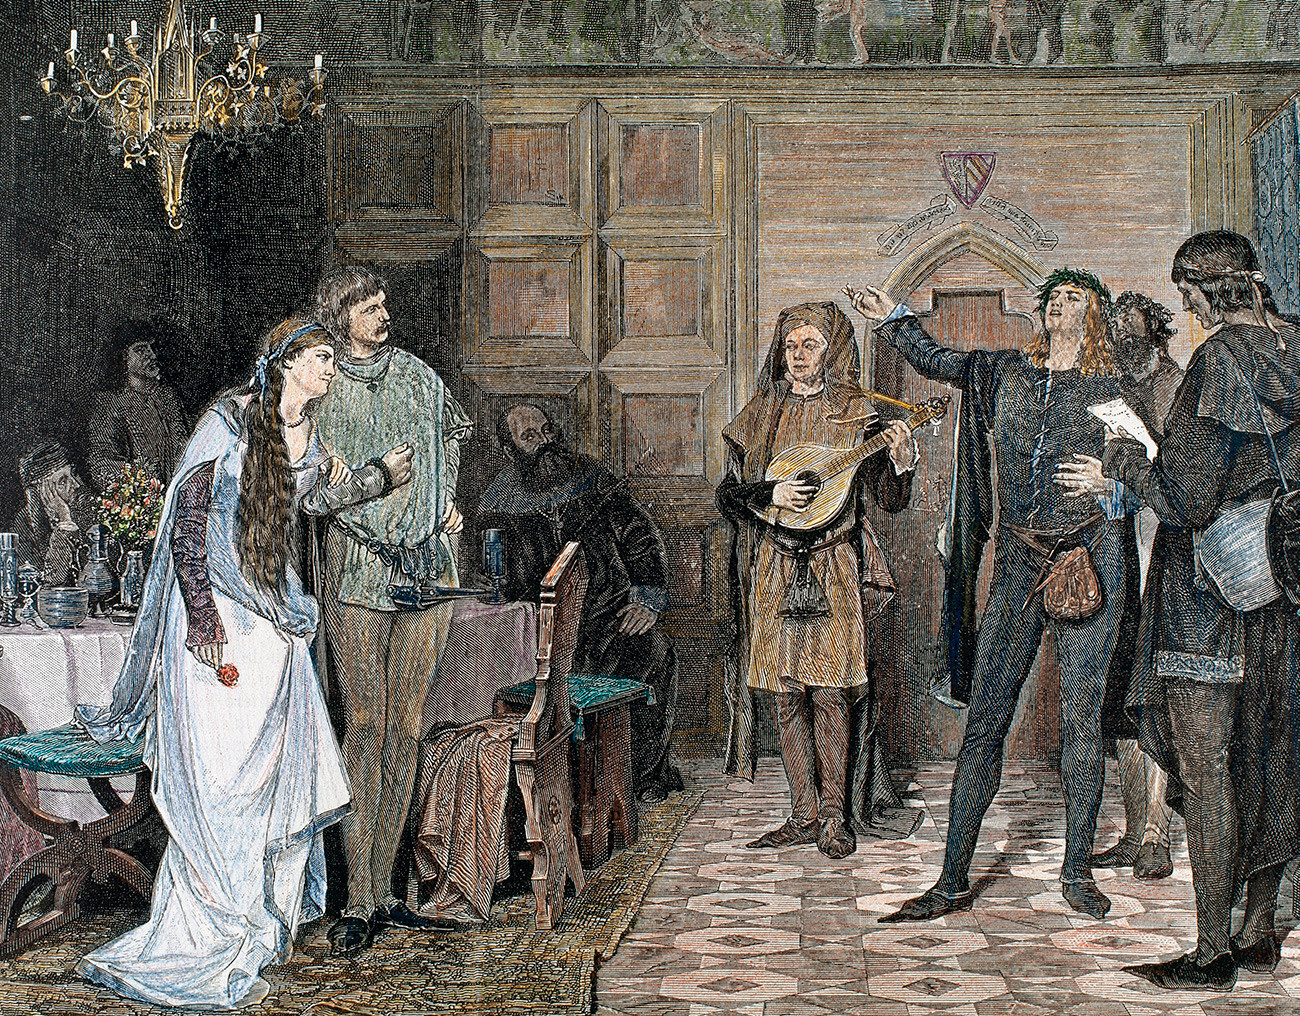 Trovadores cantando y recitando uno de sus poemas, escrito en occitano. Siglos XII y XIII. Grabado coloreado.